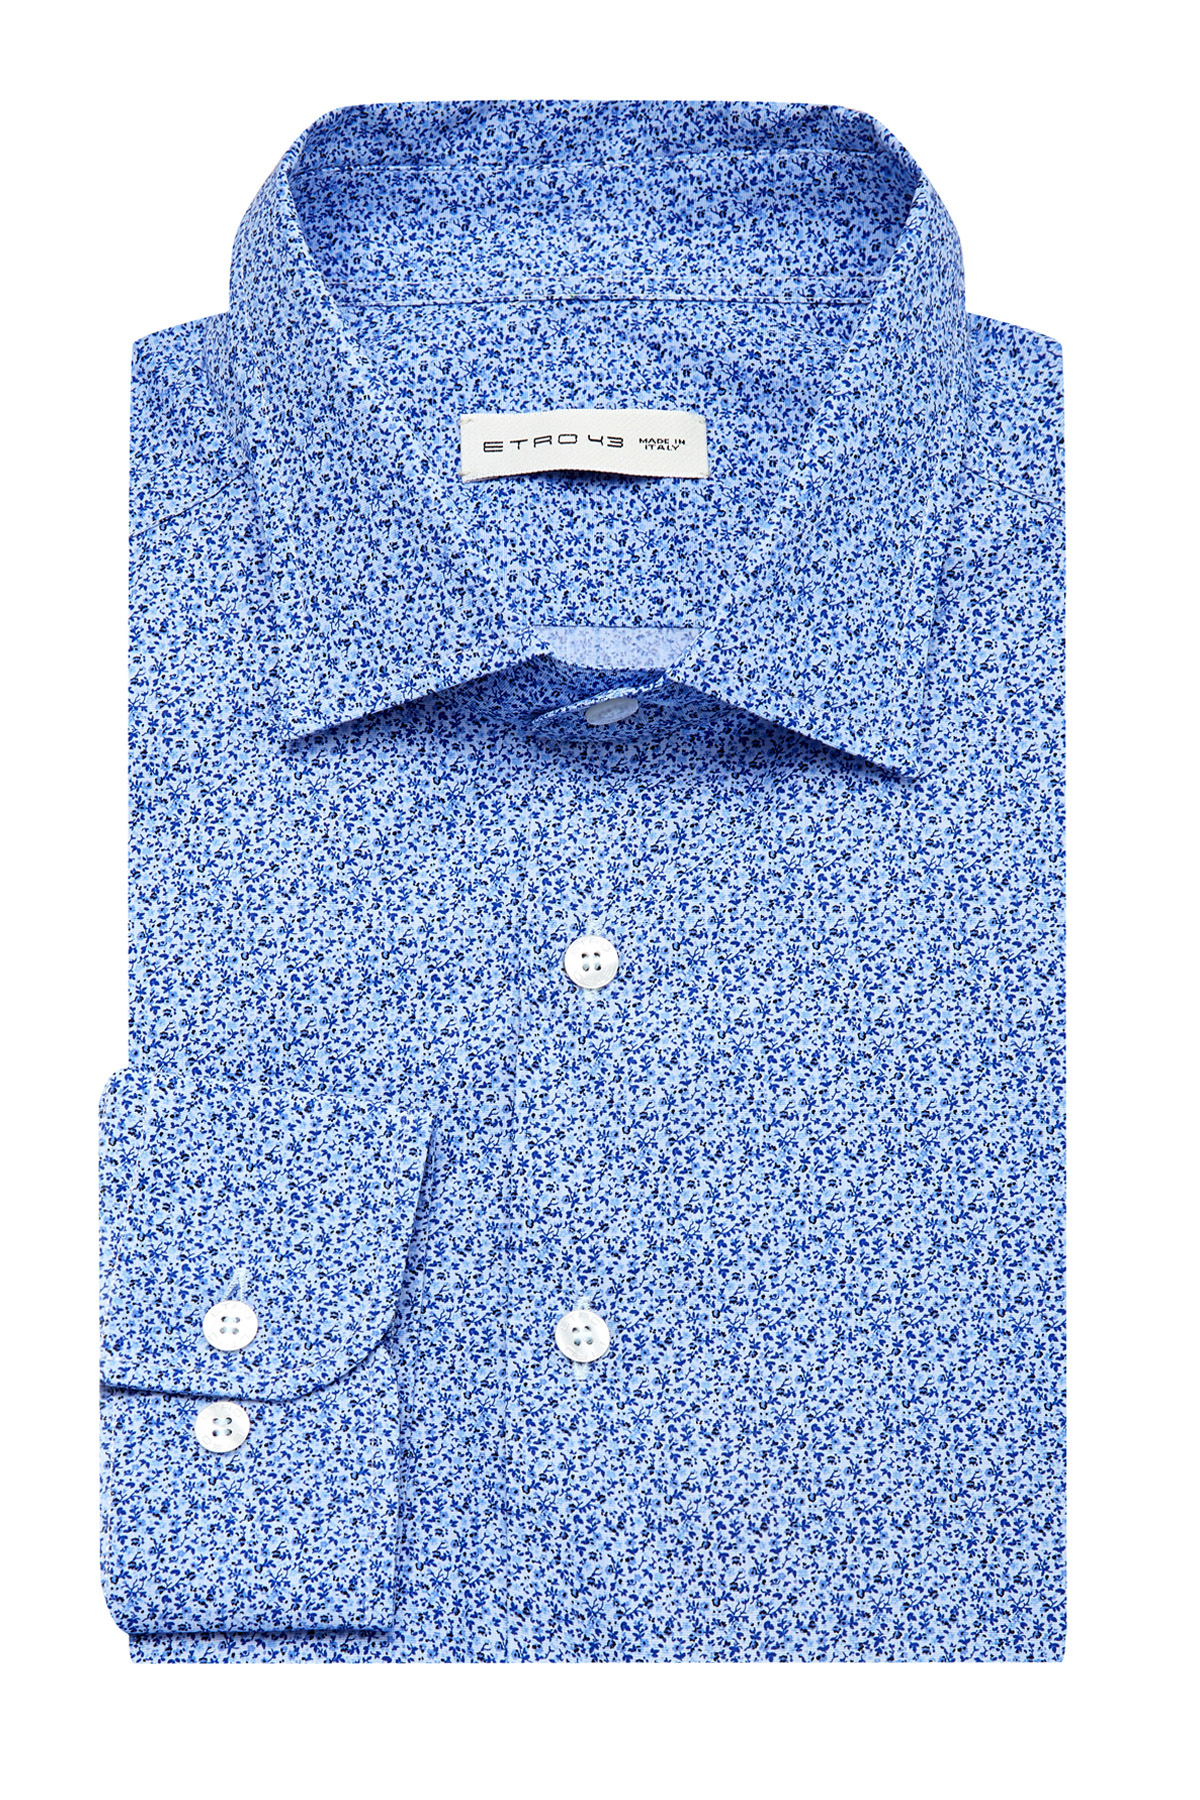 Приталенная рубашка из хлопка с микро-принтом ETRO, цвет голубой, размер 56;58;62 - фото 1